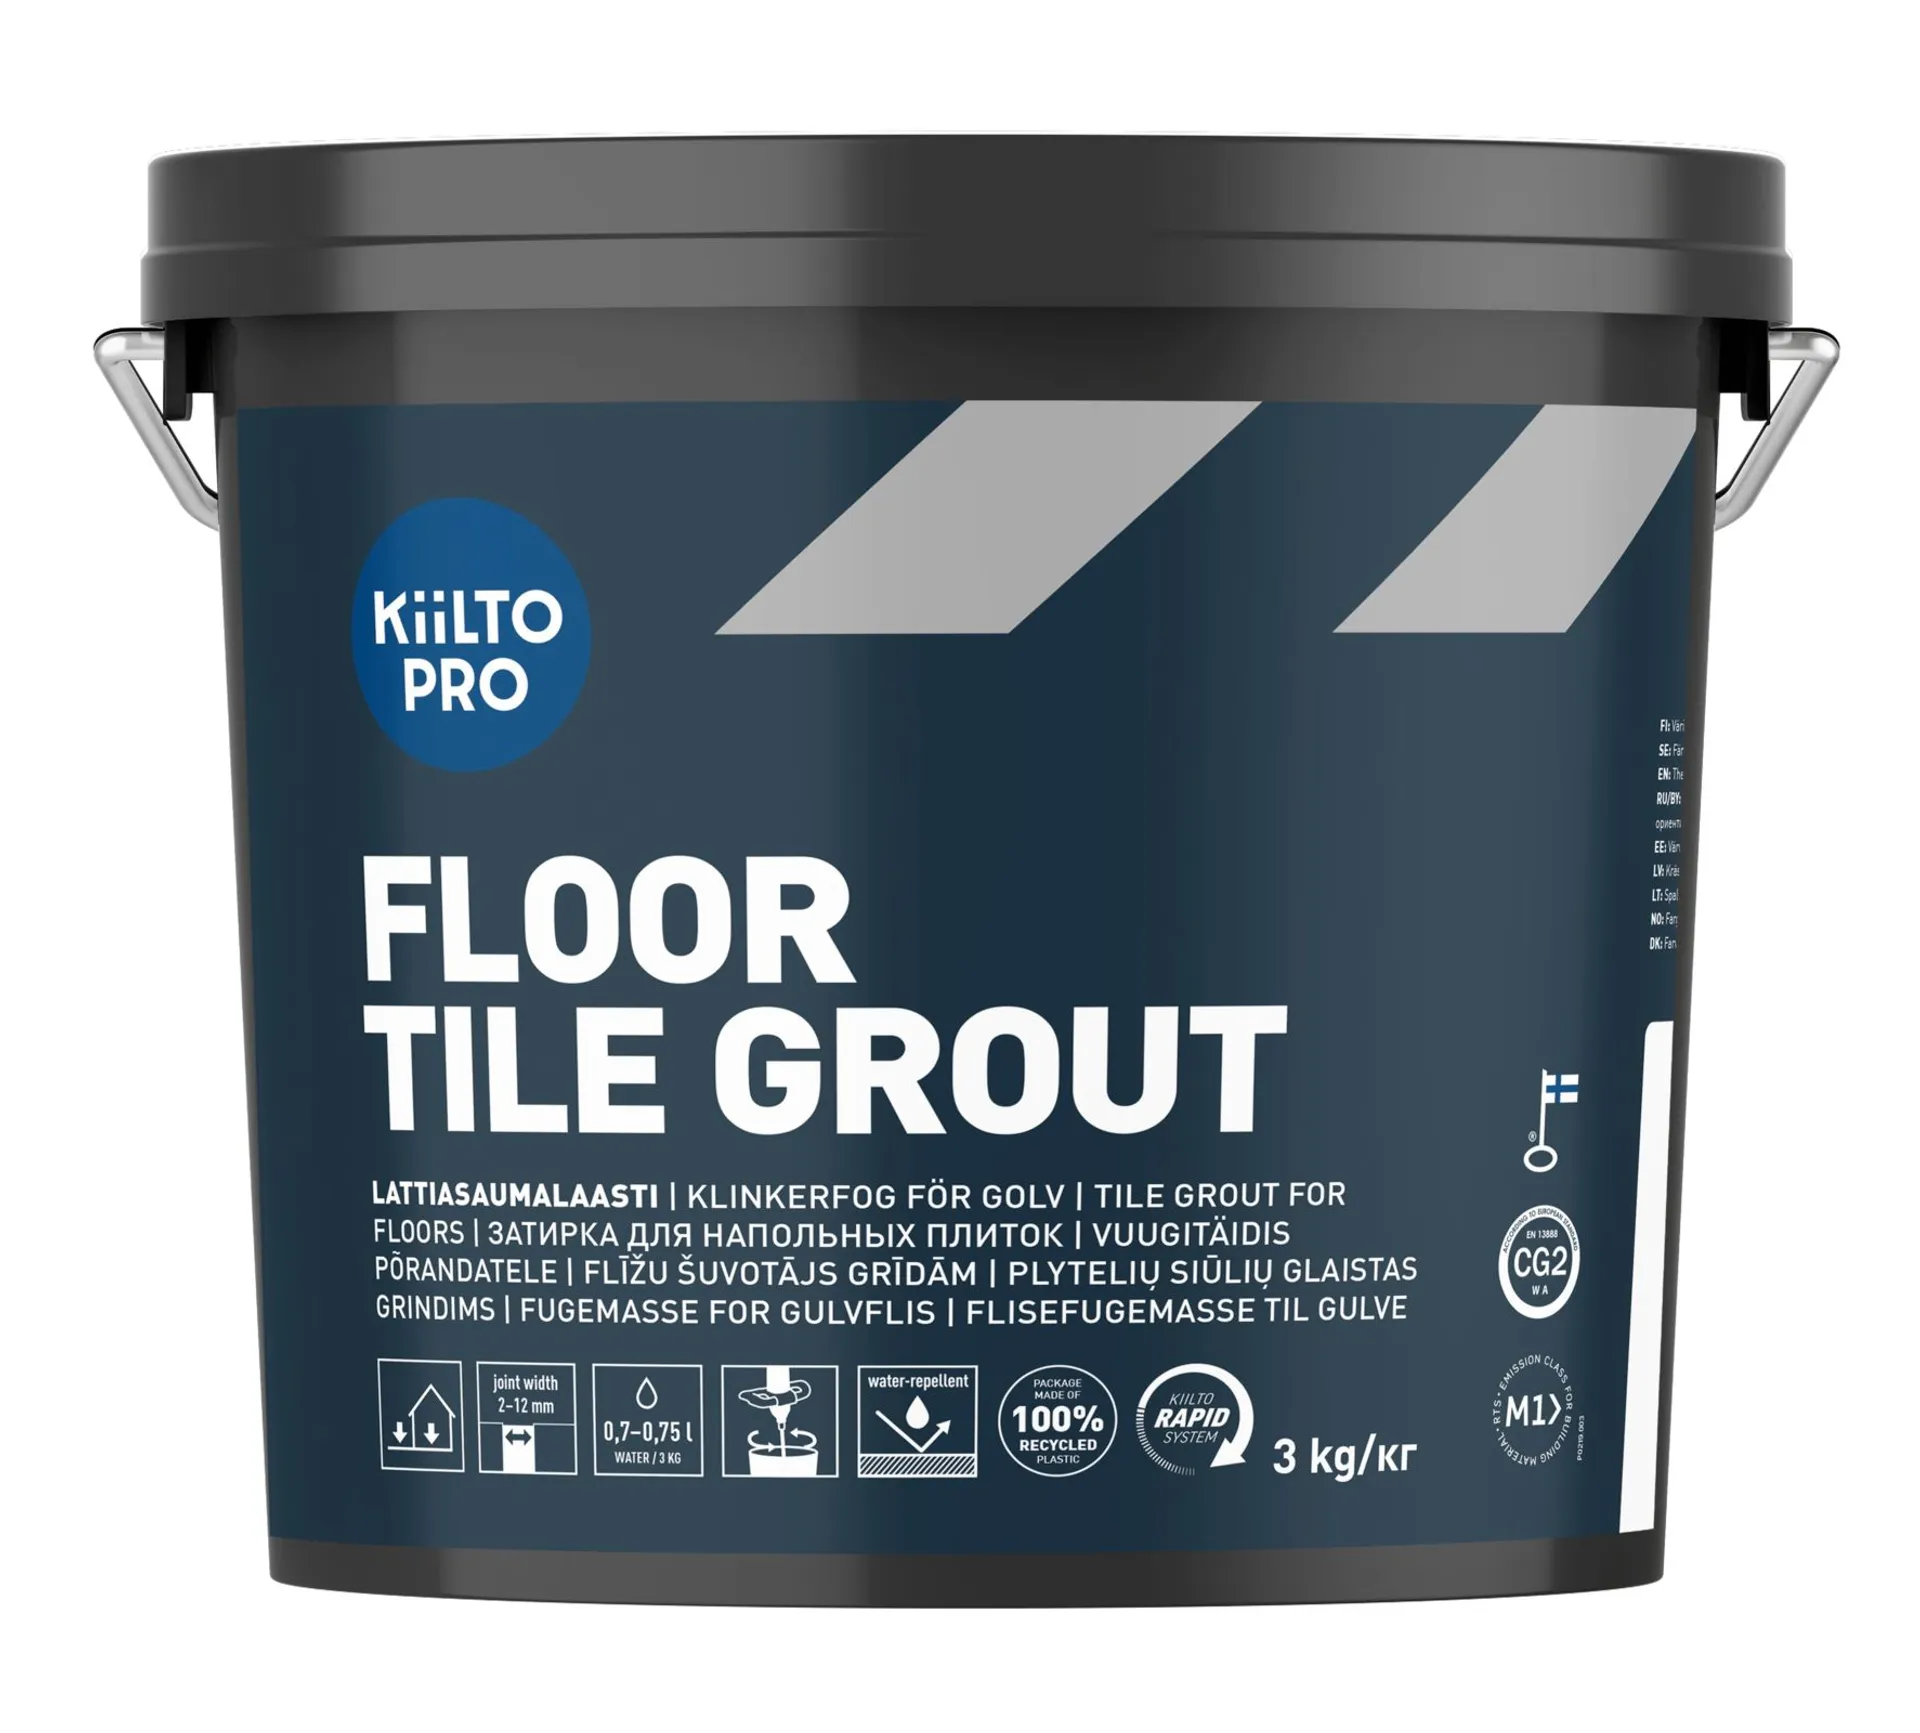 Kiilto Pro Floor tile grout 250 graphite black  3 kg